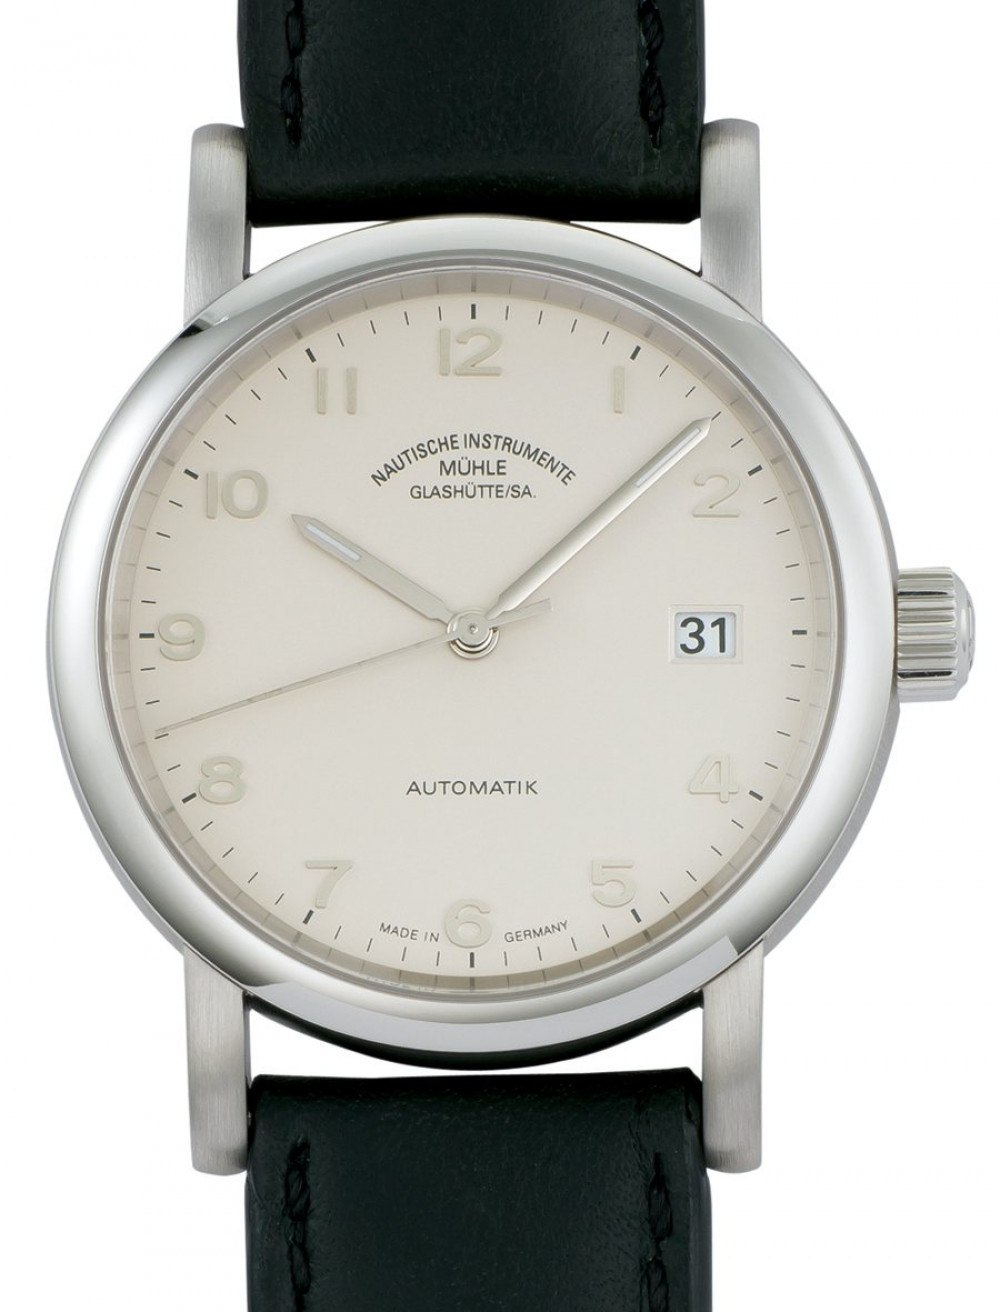 Zegarek firmy Mühle-Glashütte, model Antaria Datum